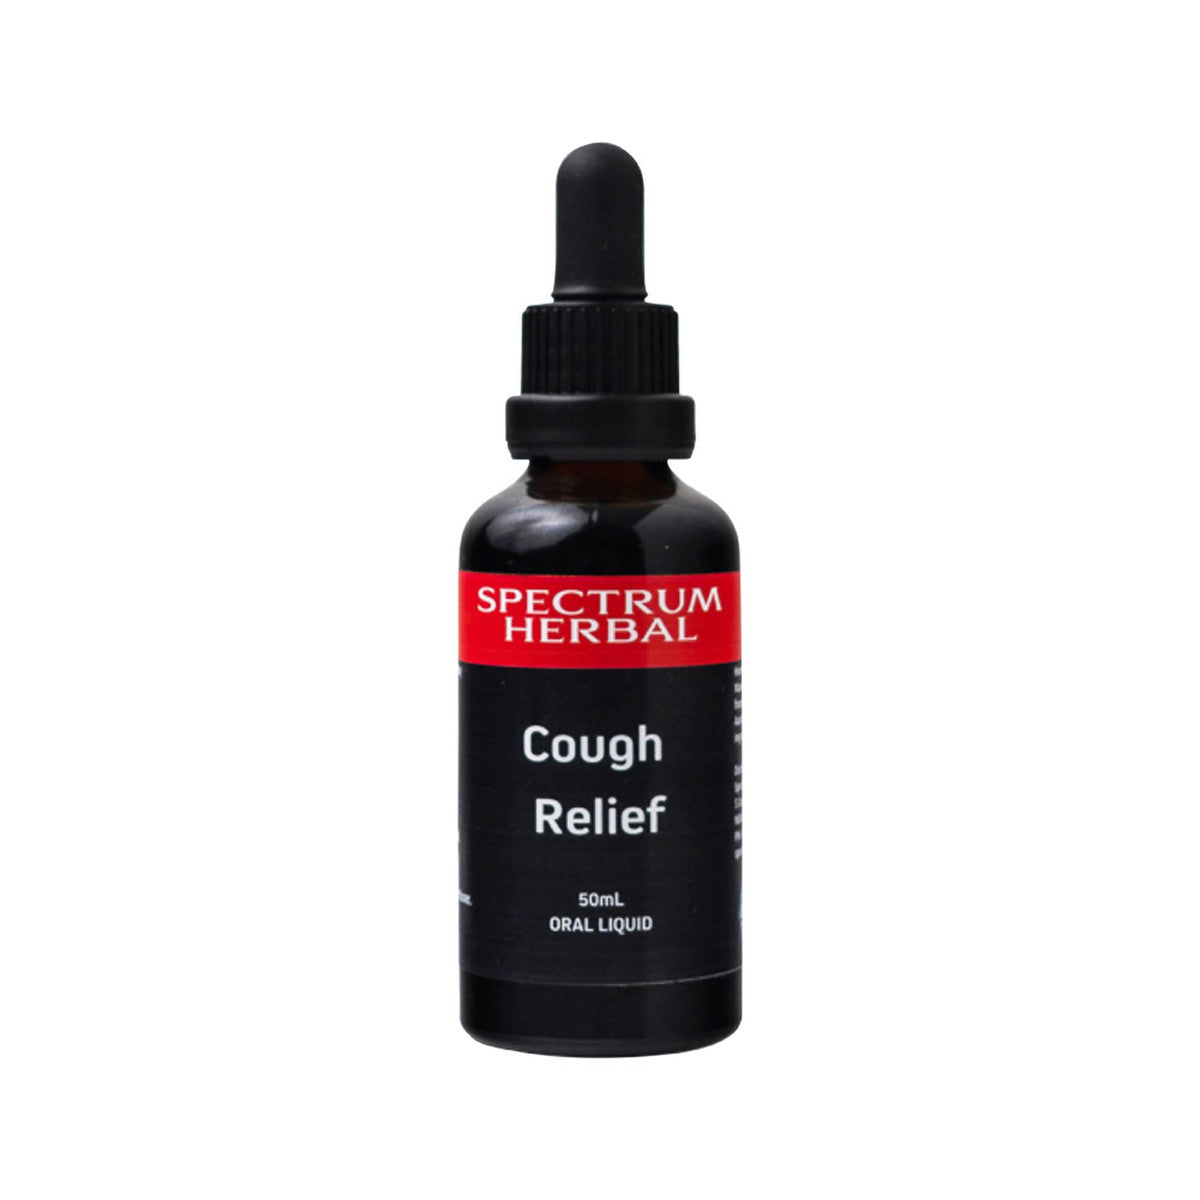 Spectrum Herbal Cough Relief 50ml